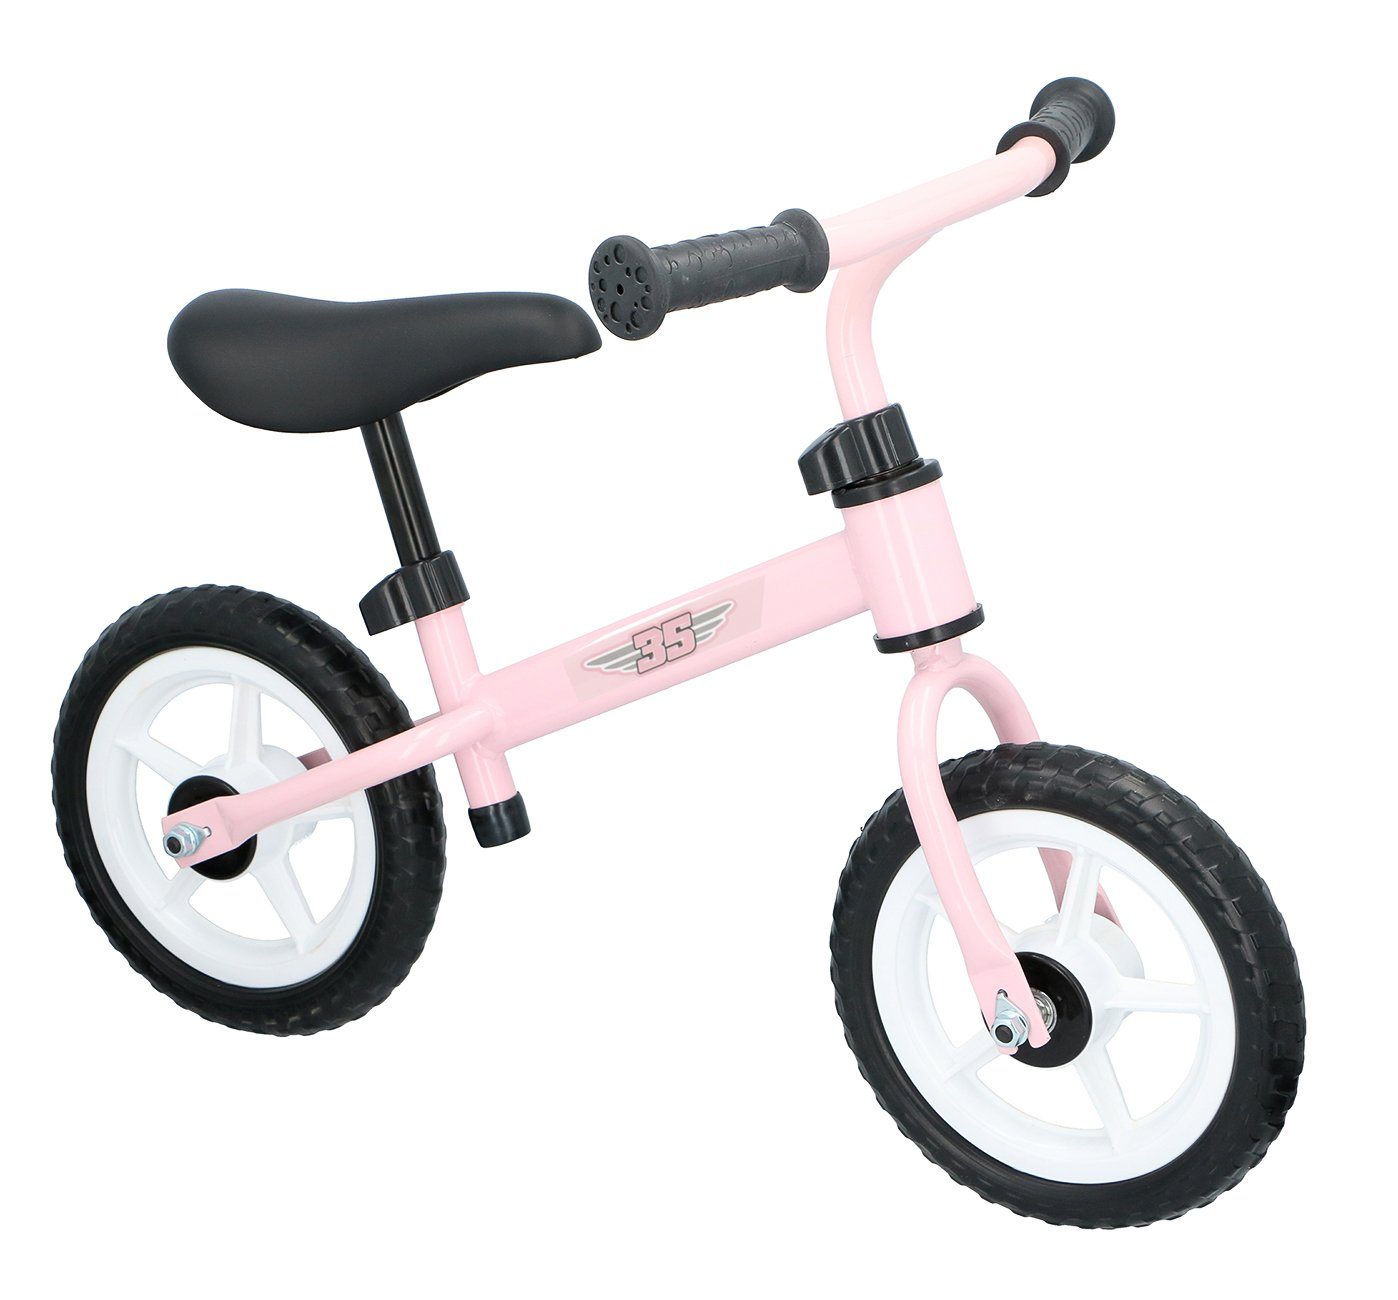 Bubble-Store Laufrad Kinder Laufrad ab 2 Jahre, Leichtmetall Rahmen, Kinder Lernlaufrad, höhenverstellbarer ergonomischer Sattel, Lenker mit rutschfesten Handgriffen Rosa